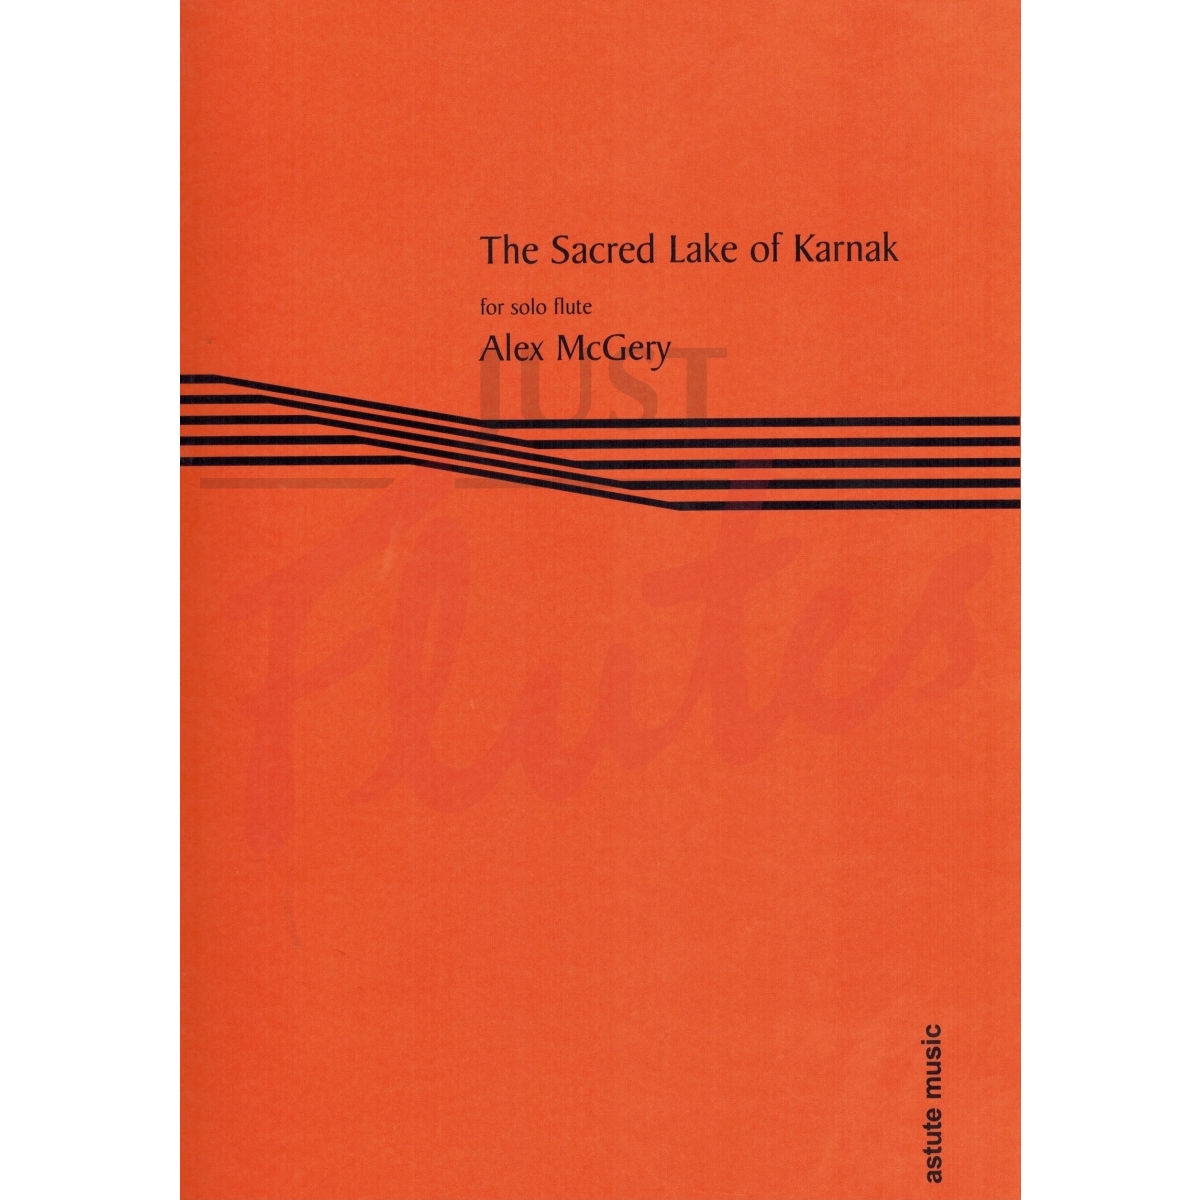 The Sacred Lake of Karnak for Solo Flute